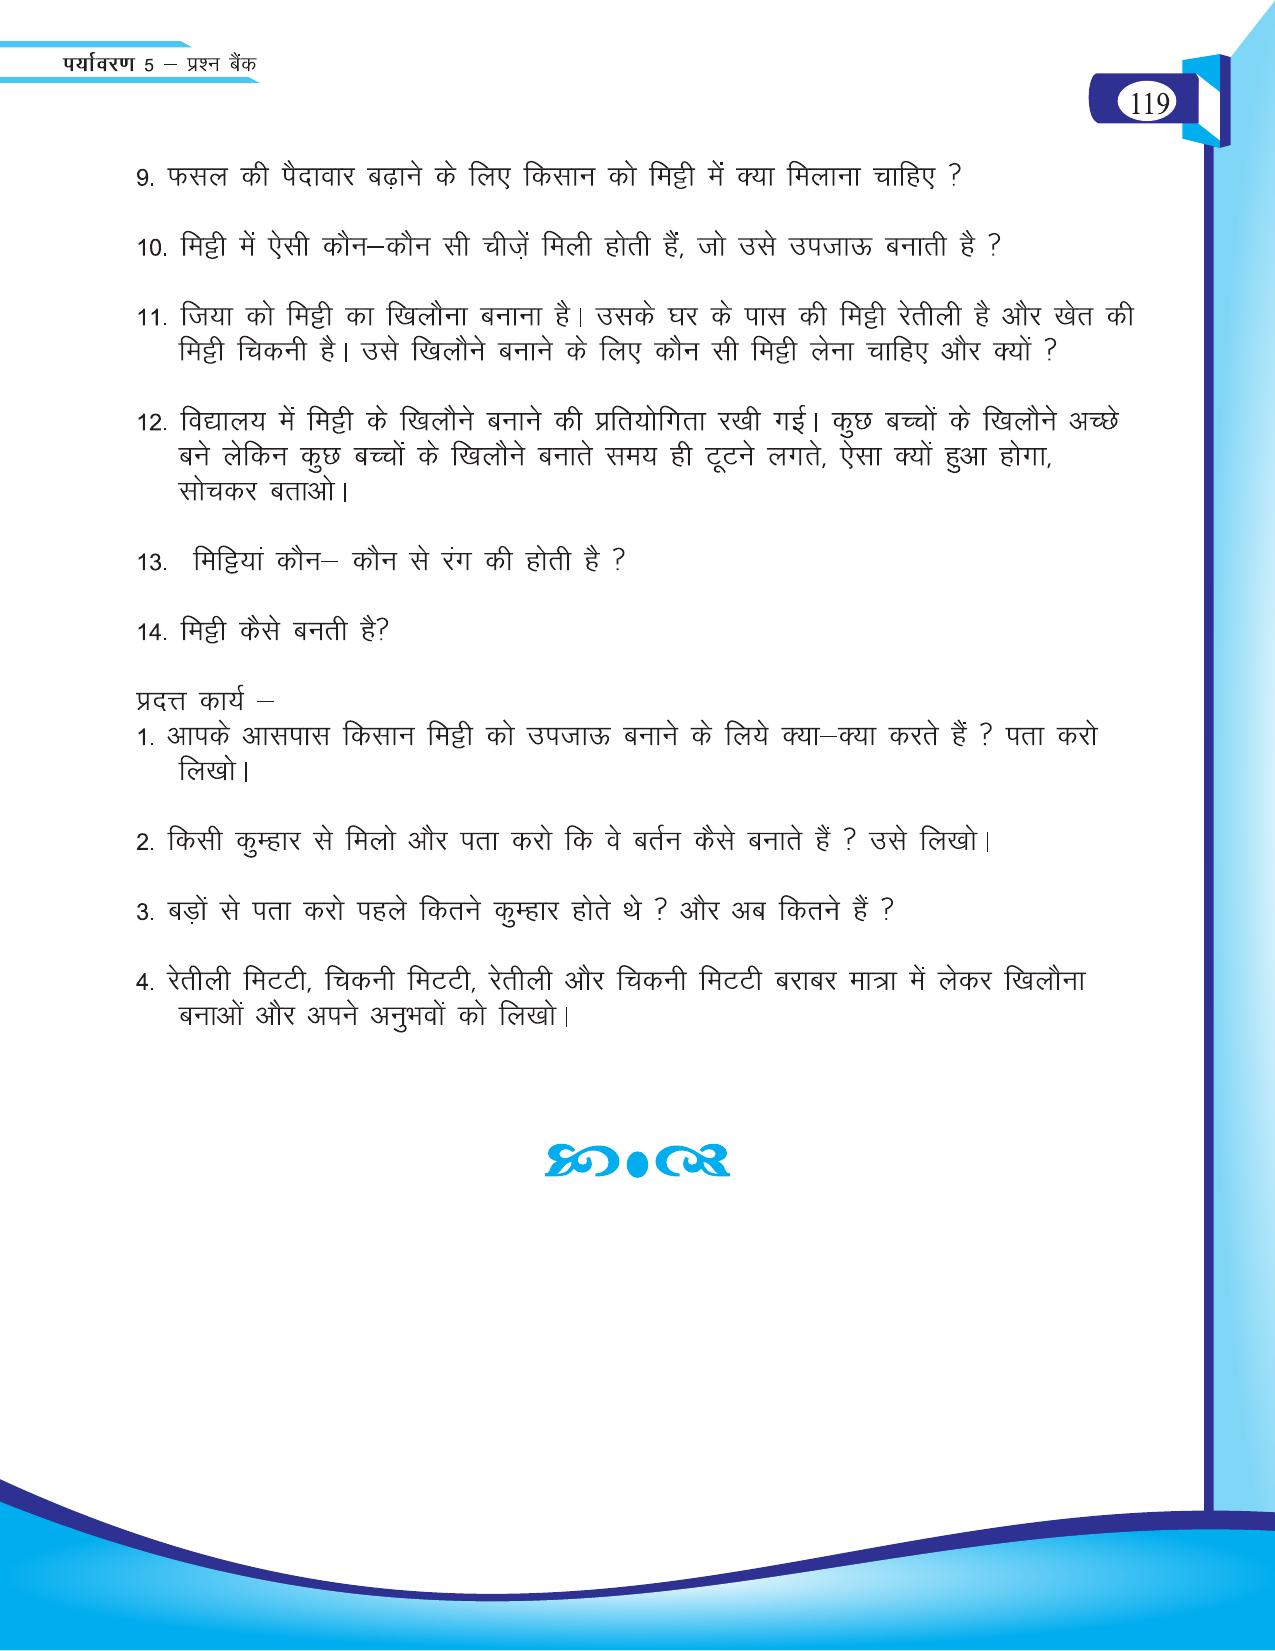 Chhattisgarh Board Class 5 EVS Question Bank 2015-16 - Page 45